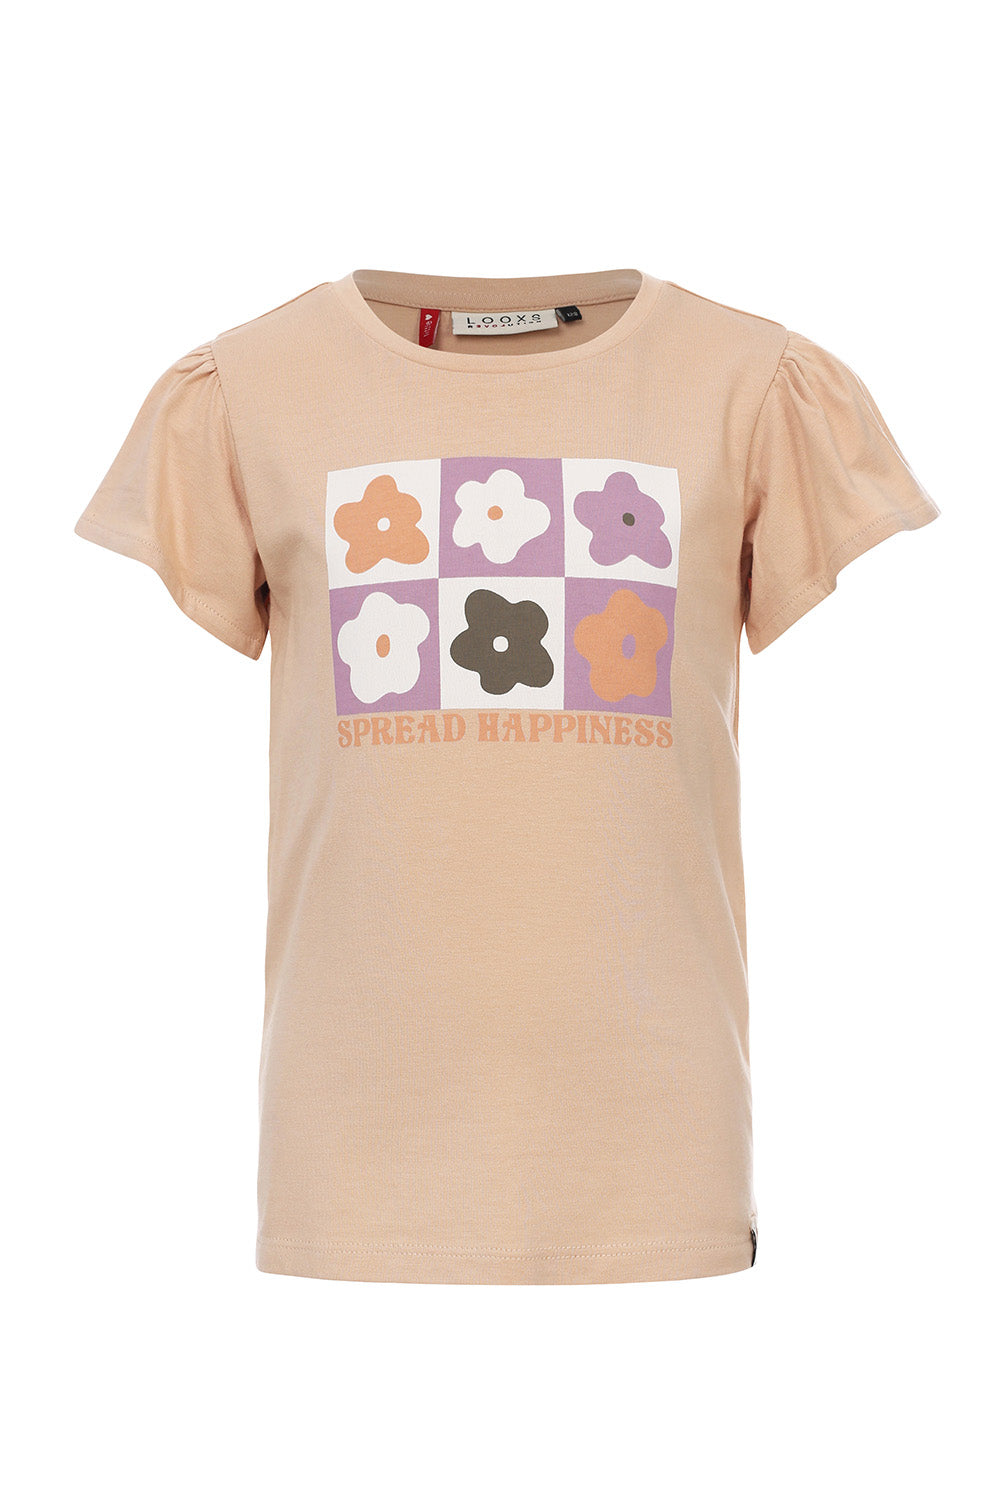 Meisjes T-Shirt S/S van LOOXS Little in de kleur Natural in maat 128.